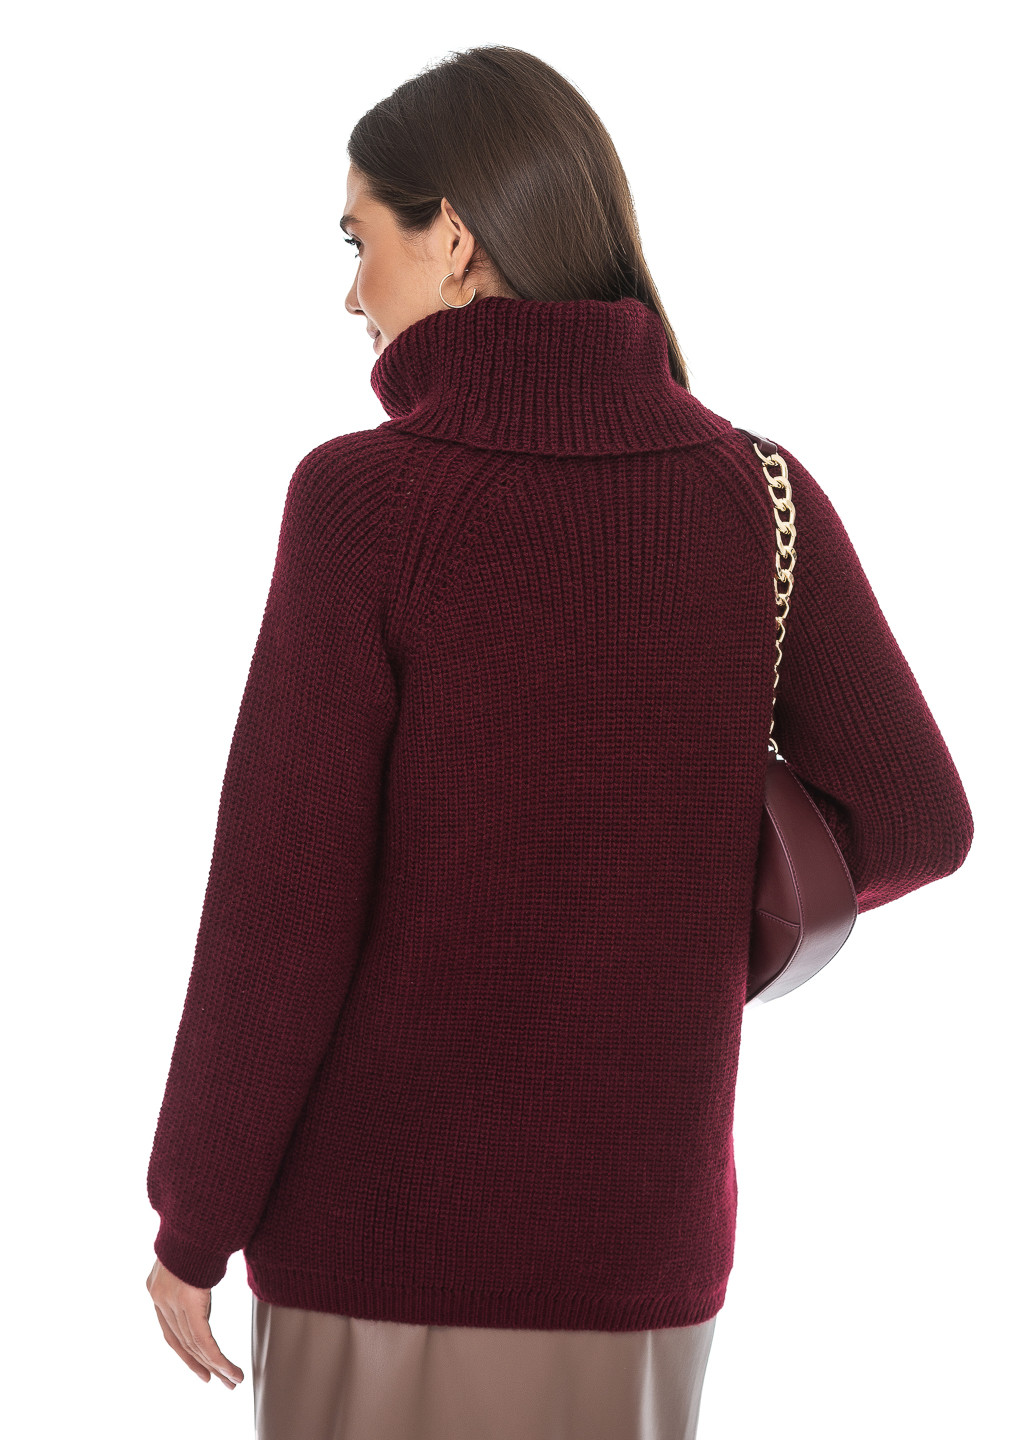 Бордовый теплый свитер крупной вязки светлая пудра SVTR